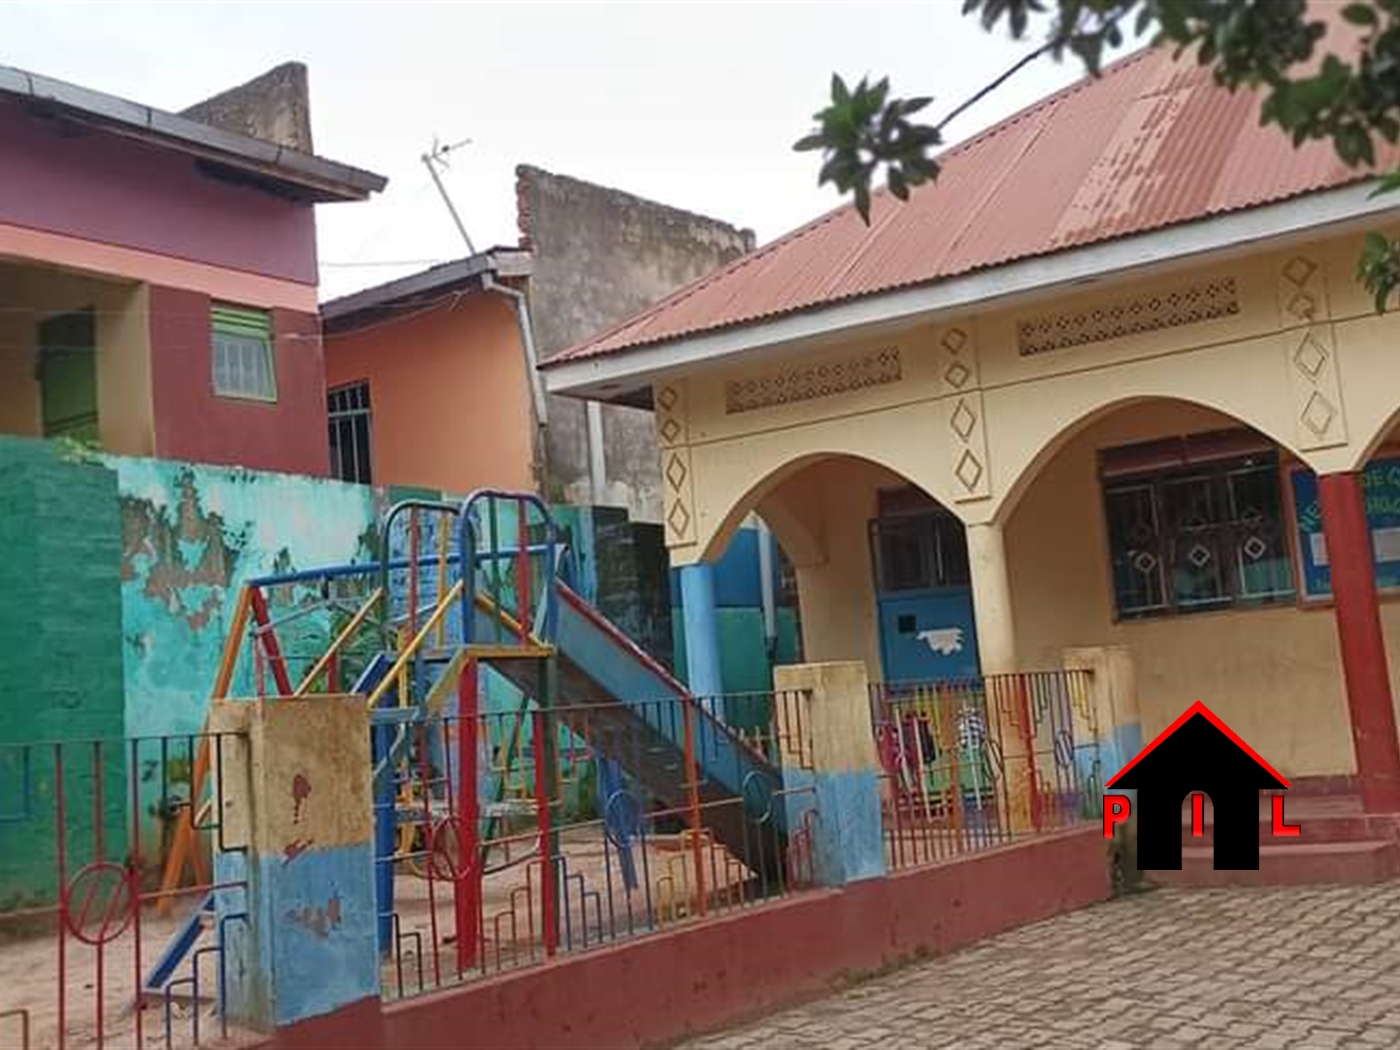 School for sale in Kawempe Kampala